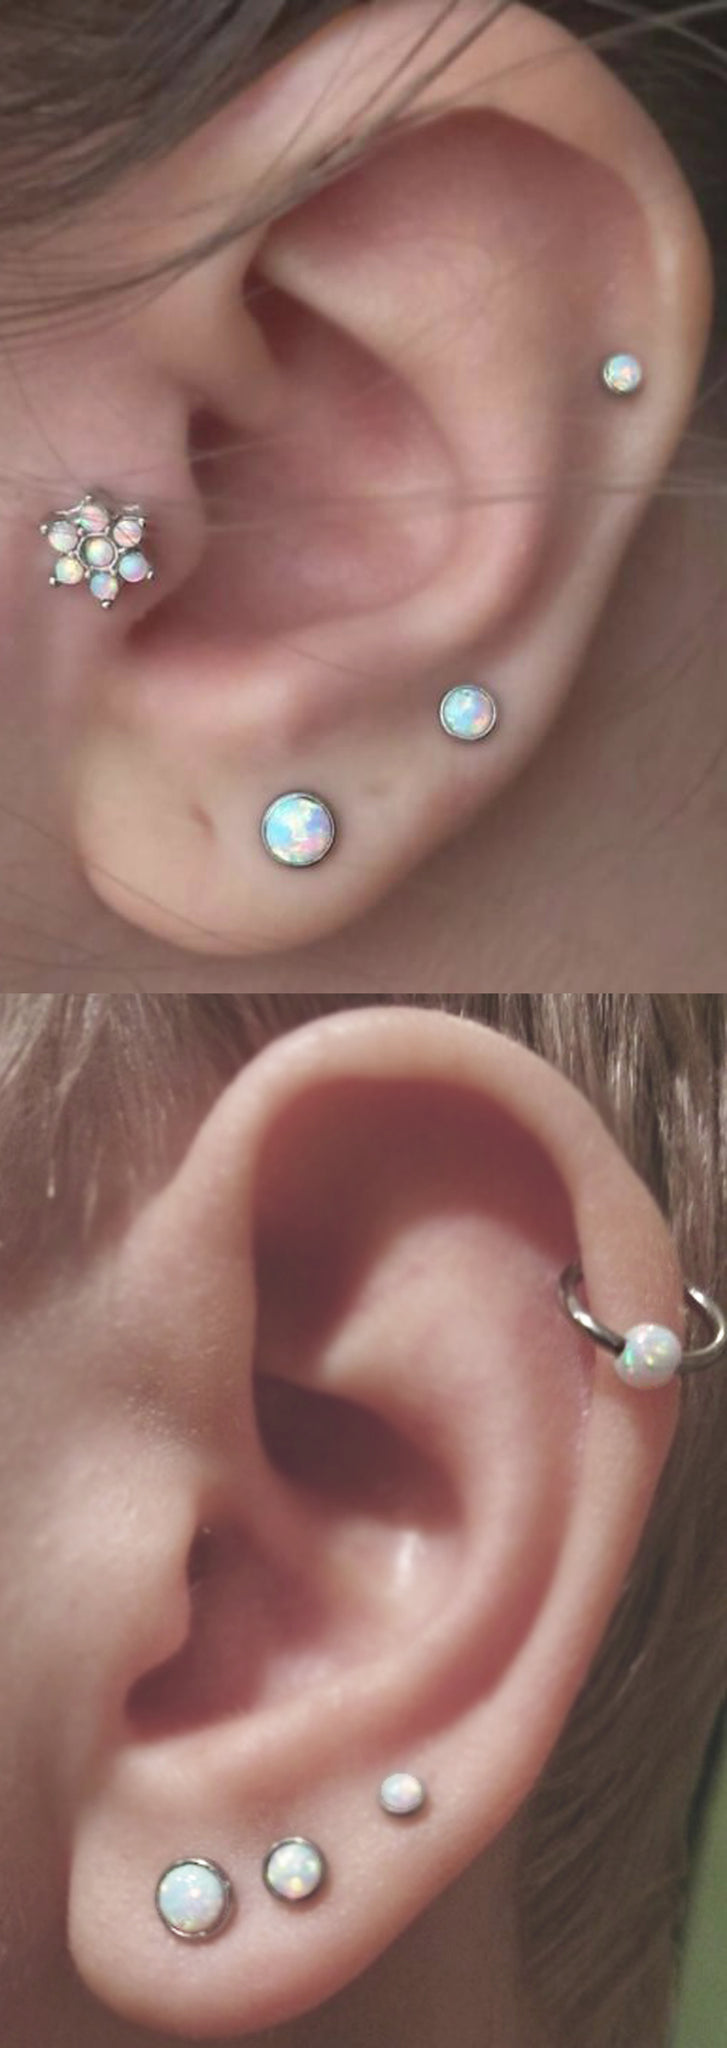 Delicate Opal Ear Piercing Ideas at MyBodiArt.com - Flower Tragus Earring - Triple Lobe Studs - Opal Cartilage Ring 